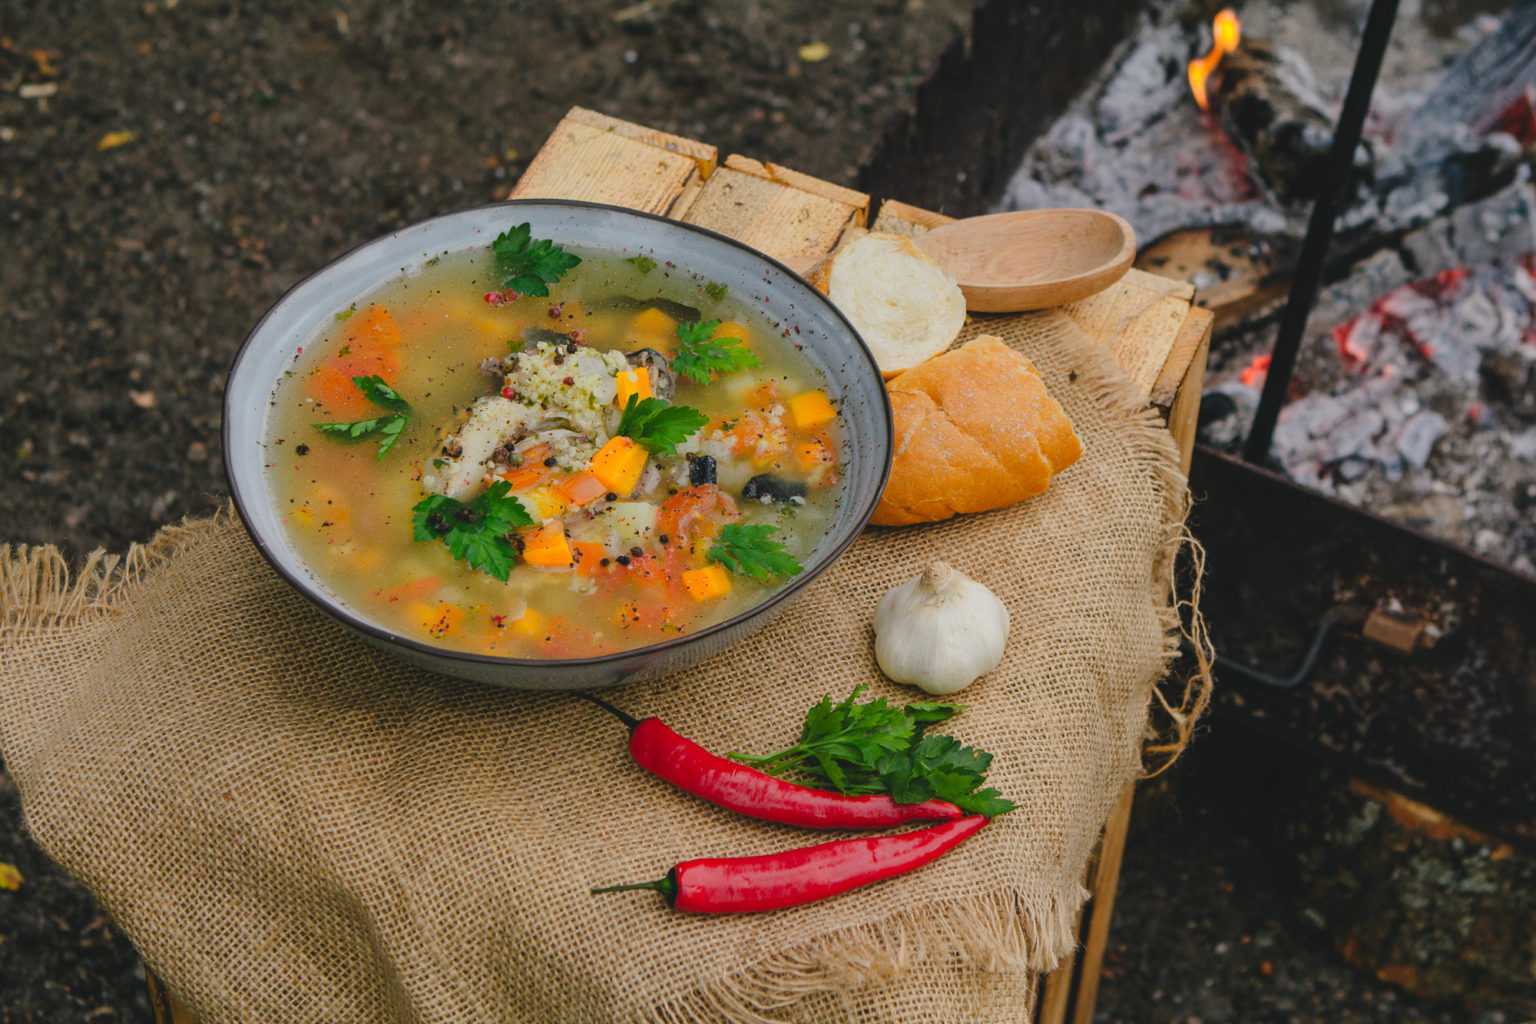 Уха из стерляди – ни с чем несравнимый вкус и аромат рыбного супа. как приготовить вкусную уху из стерляди